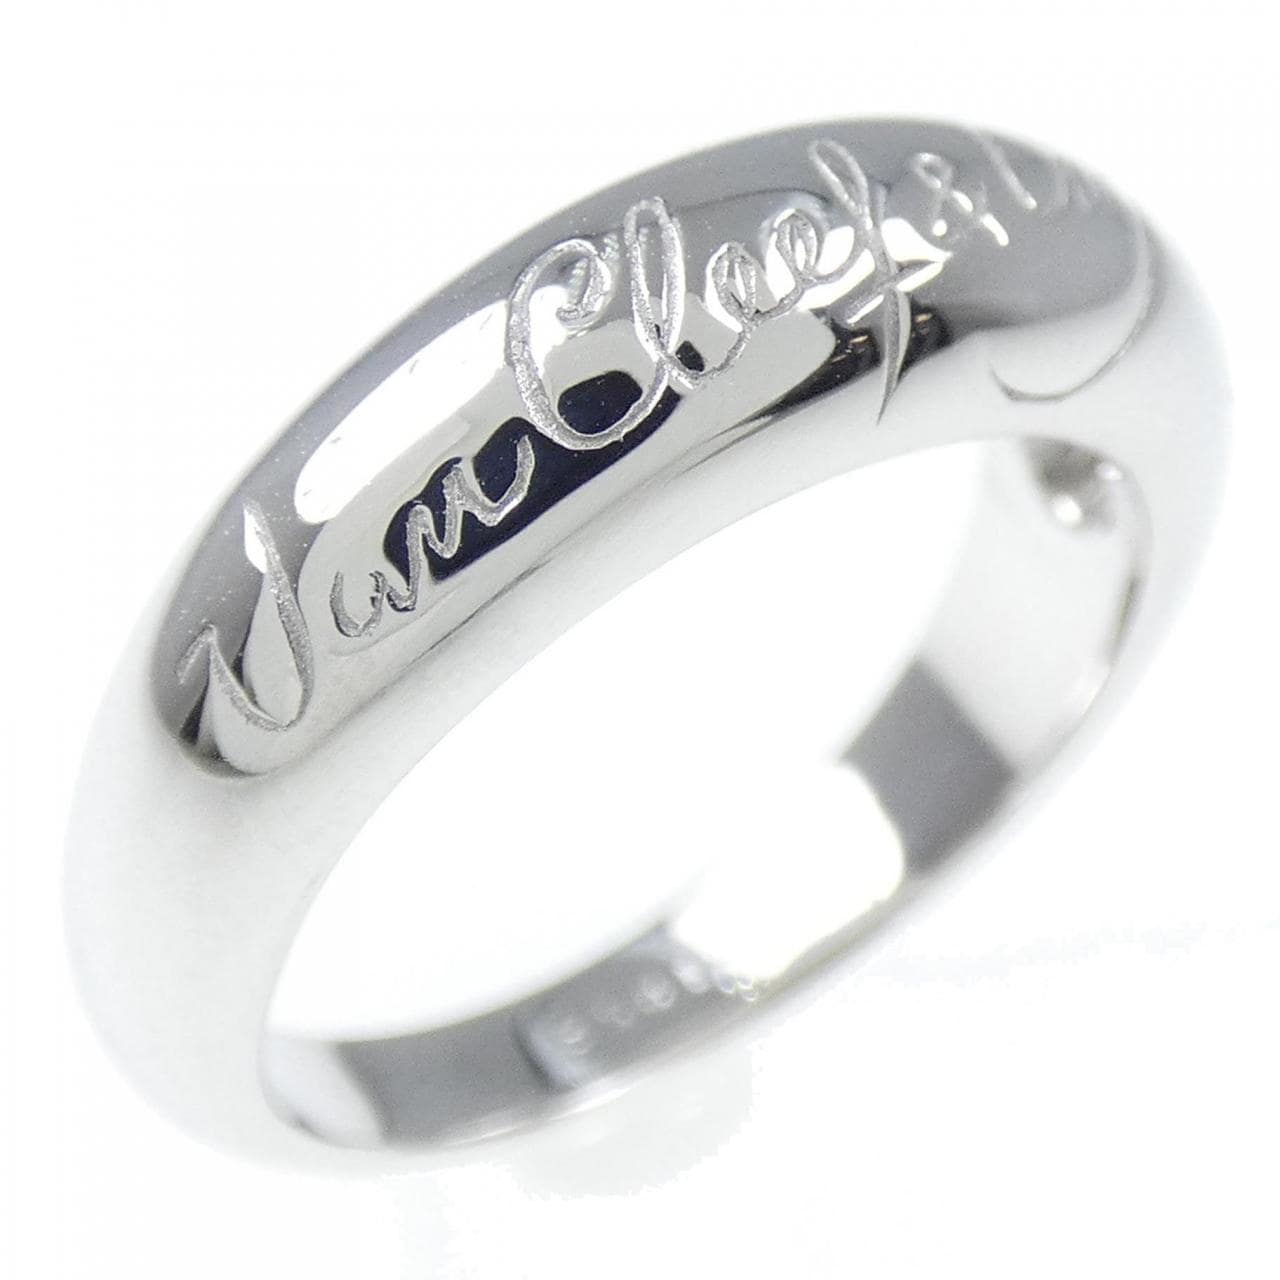 Van Cleef & Arpels signature Ring